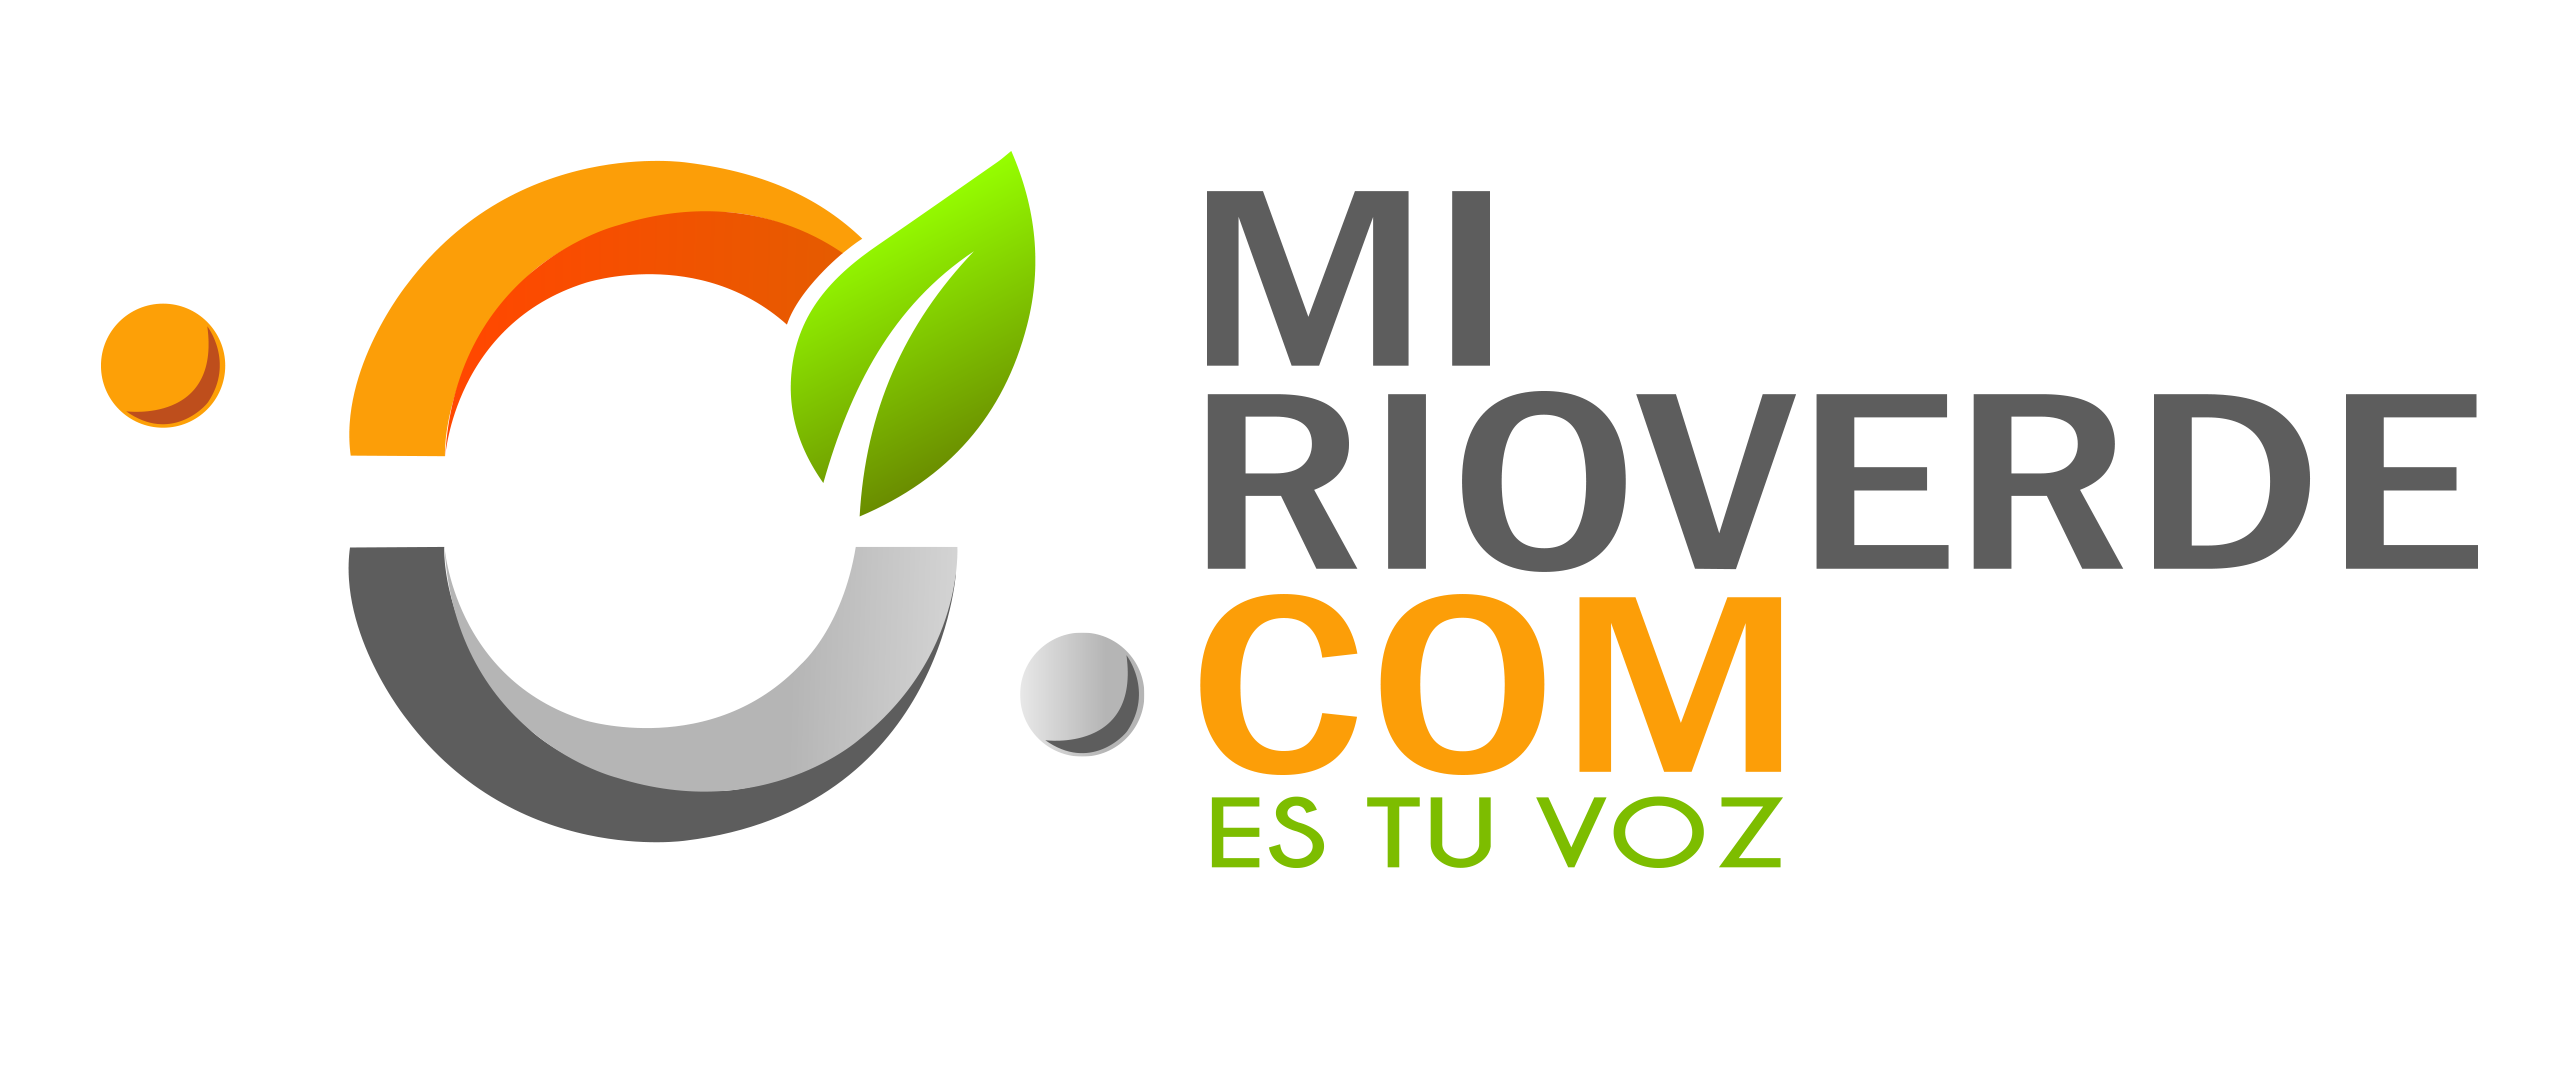 www.mirioverde.com